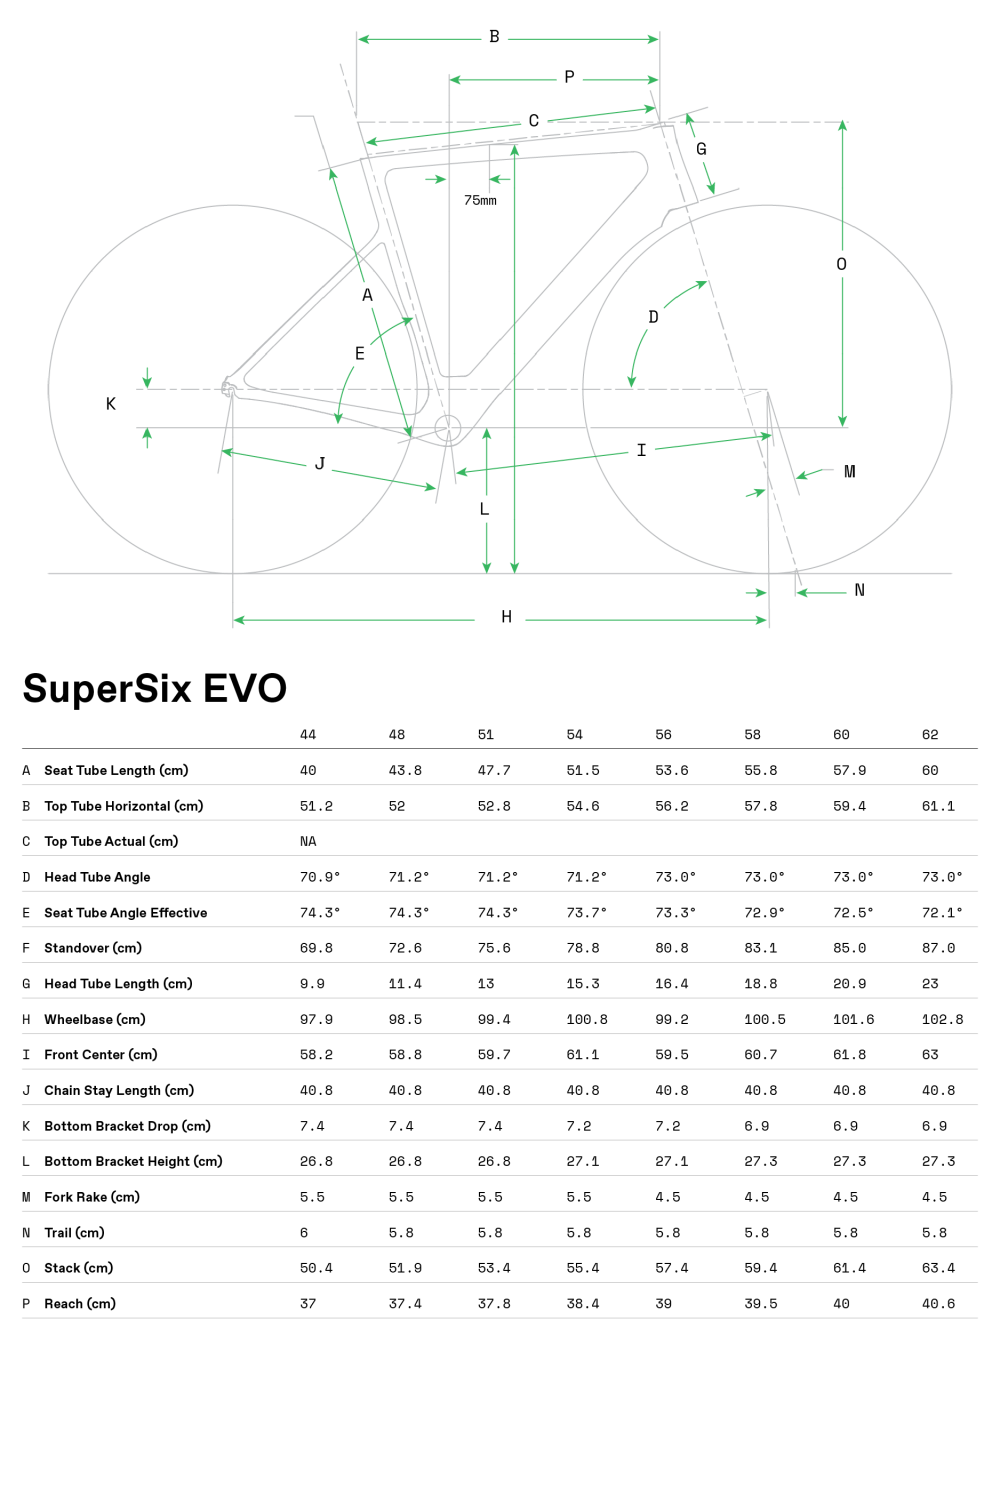 SuperSix EVO Hi-MOD Disc Ultegra Di2 - 